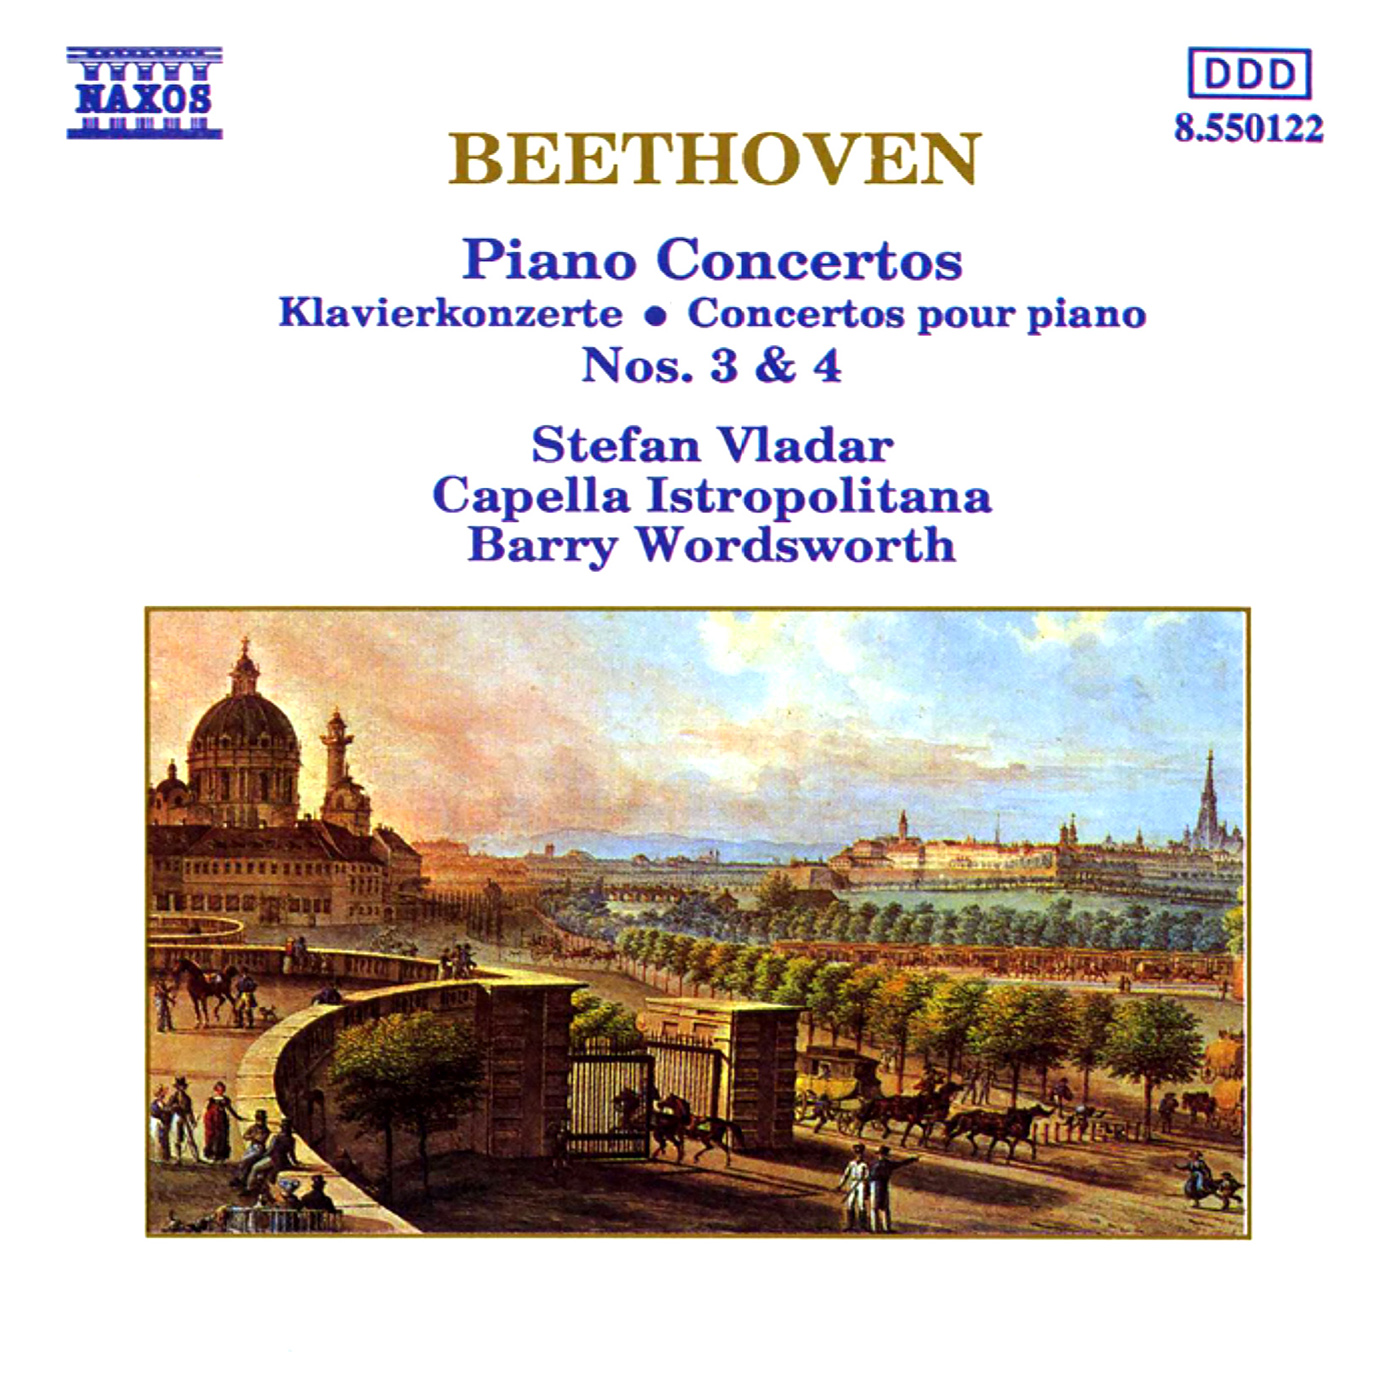 BEETHOVEN, L. van: Piano Concertos Nos. 3 and 4 (Vladar, Capella Istropolitana, Wordsworth)